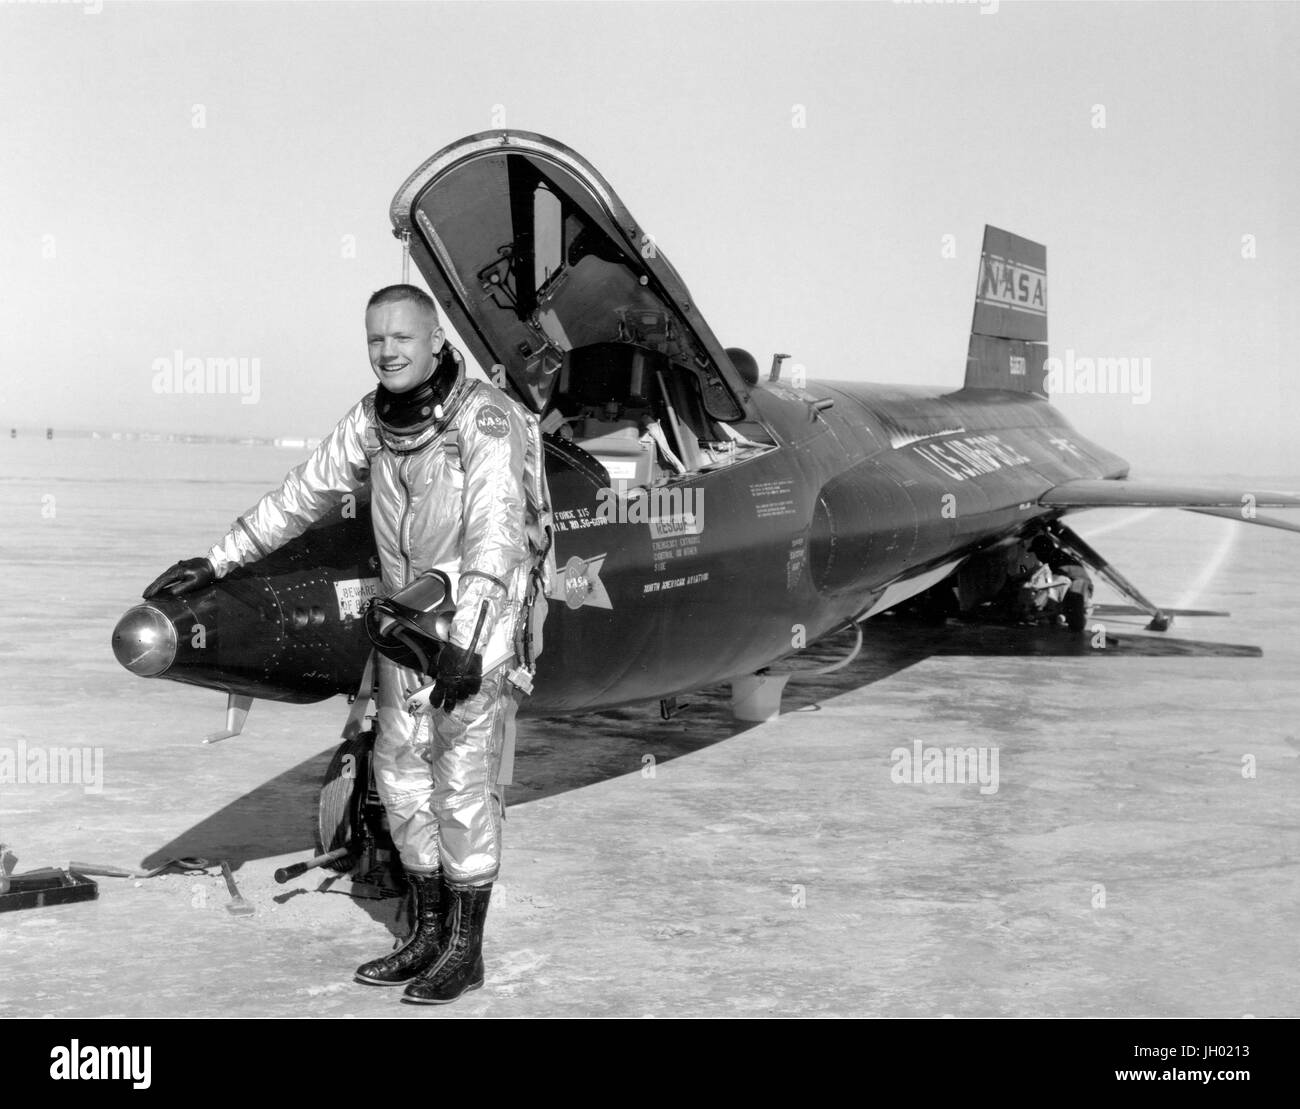 Dryden, die pilot Neil Armstrong ist hier neben der x-15 Schiff #1 (56-6670) nach einem Flug von Forschung. Die x-15 war ein raketengetriebenes Flugzeug 50 Fuß lange mit einer Flügelspannweite von 22 Fuß. Es war ein Raketen-förmigen Fahrzeug mit einer ungewöhnlichen keilförmigen Seitenleitwerk, dünne stubby Flügeln und einzigartige Seite Verkleidungen, die entlang der Seite des Rumpfes erweitert. Die x-15 wurde über einen Zeitraum von fast 10 Jahren, von Juni 1959 bis Oktober 1968 geflogen. Es stellte die inoffizielle Geschwindigkeit und Höhe Weltrekorde auf. Erkenntnissen aus der erfolgreichen x-15 Programm trugen zur Entwicklung des Quecksilbers Stockfoto